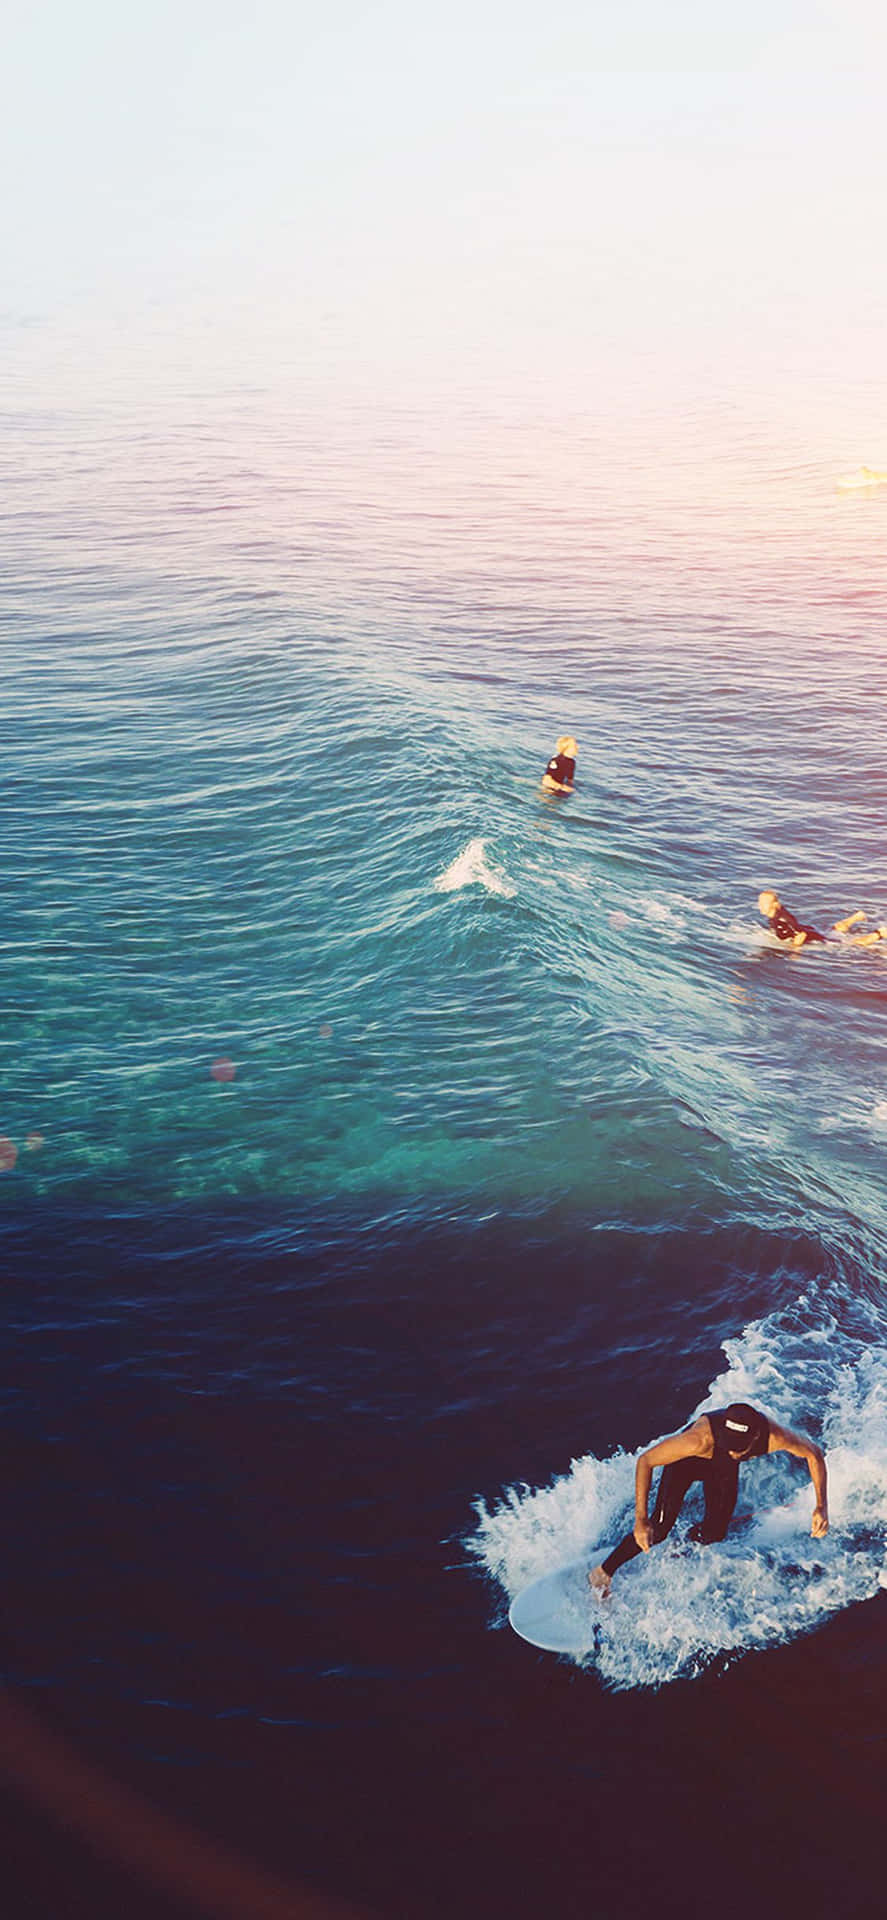 Einegruppe Von Menschen Reitet Eine Welle Im Ozean. Wallpaper